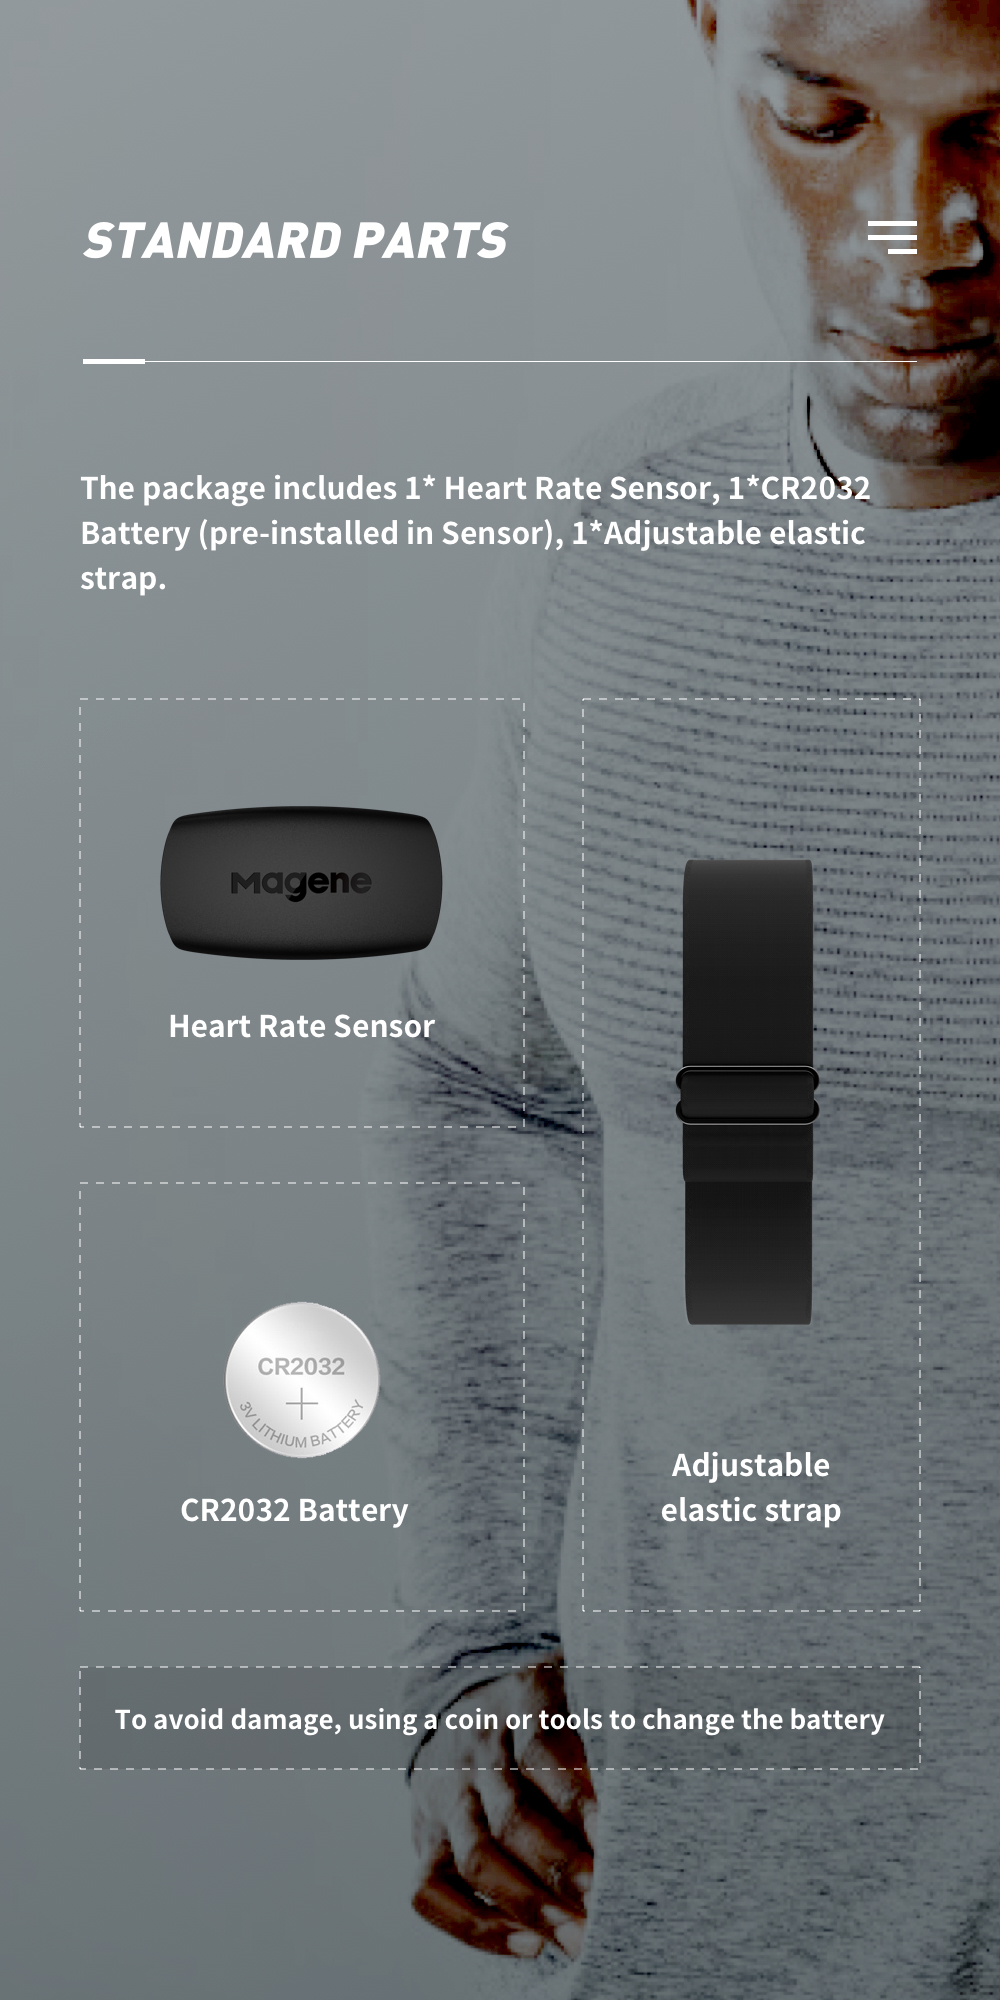 คำอธิบายเพิ่มเติมเกี่ยวกับ Magene H64 Mover Heart Rate Sensor เซ็นเซอร์ วัดอัตราการเต้นหัวใจ วัดฮาร์ทเรท วัดชีพจร แบบคาดอก Heart Rate Monitor เชื่อมต่อBlth/ANT Heart Rate Sensor Bicycle Accessories